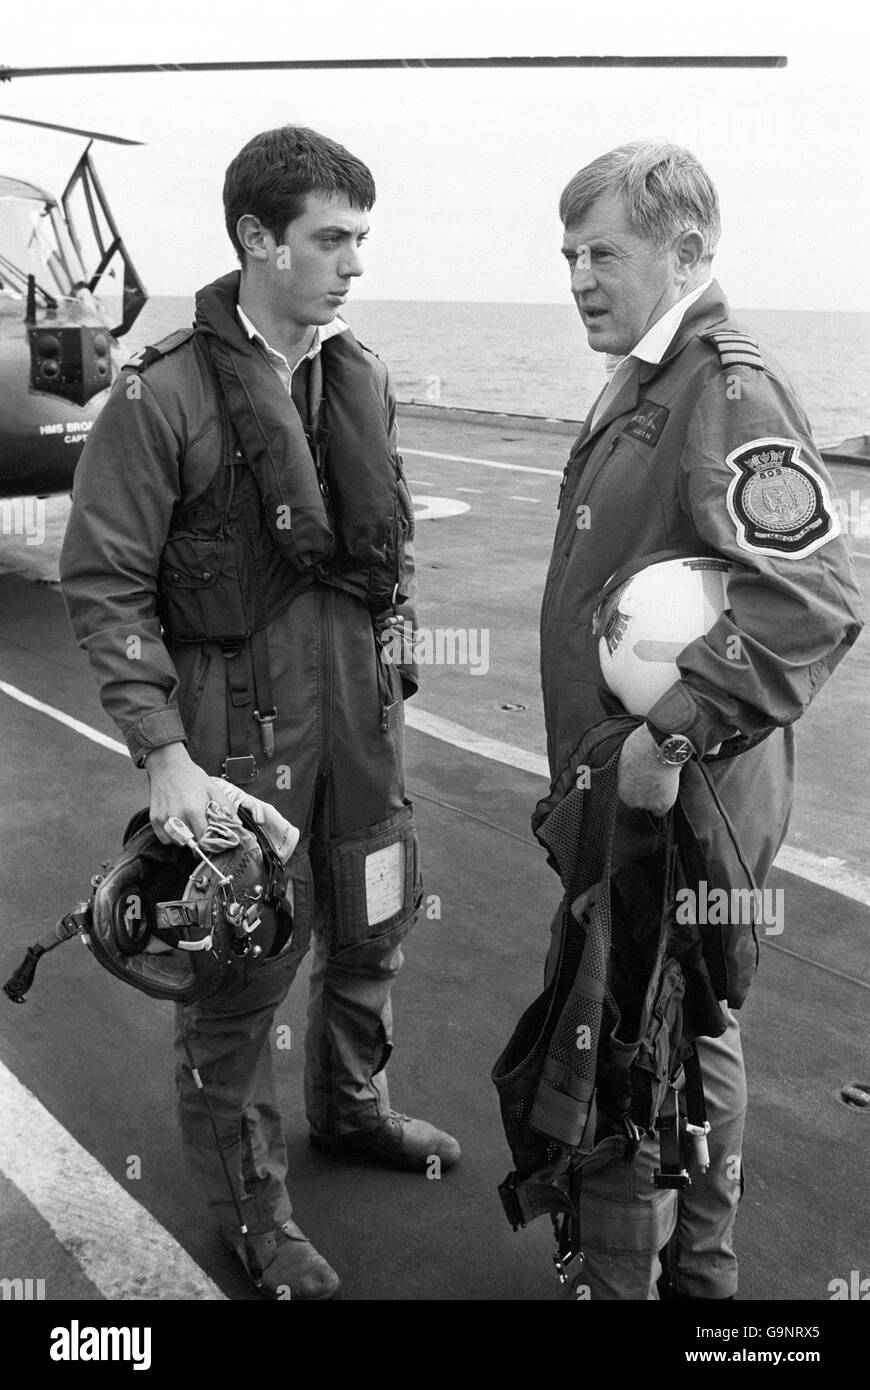 Le Capt Lyn Middleton (à droite), responsable du HMS Hermes, rencontre son fils, le sous-Lt Ray Middleton, 21 ans, à bord du navire le lundi de Pâques. Le capitaine Middleton a traversé la plate-forme de vol du porte-avions pour saluer Ray qui venait de faire voler son hélicoptère Lynx depuis un navire de guerre voisin pour faire un dépôt d'approvisionnement. Plus tard, Ray a fait voler son père au navire Ray sert, où le Capt Middleton a discuté de la voie à suivre. Banque D'Images